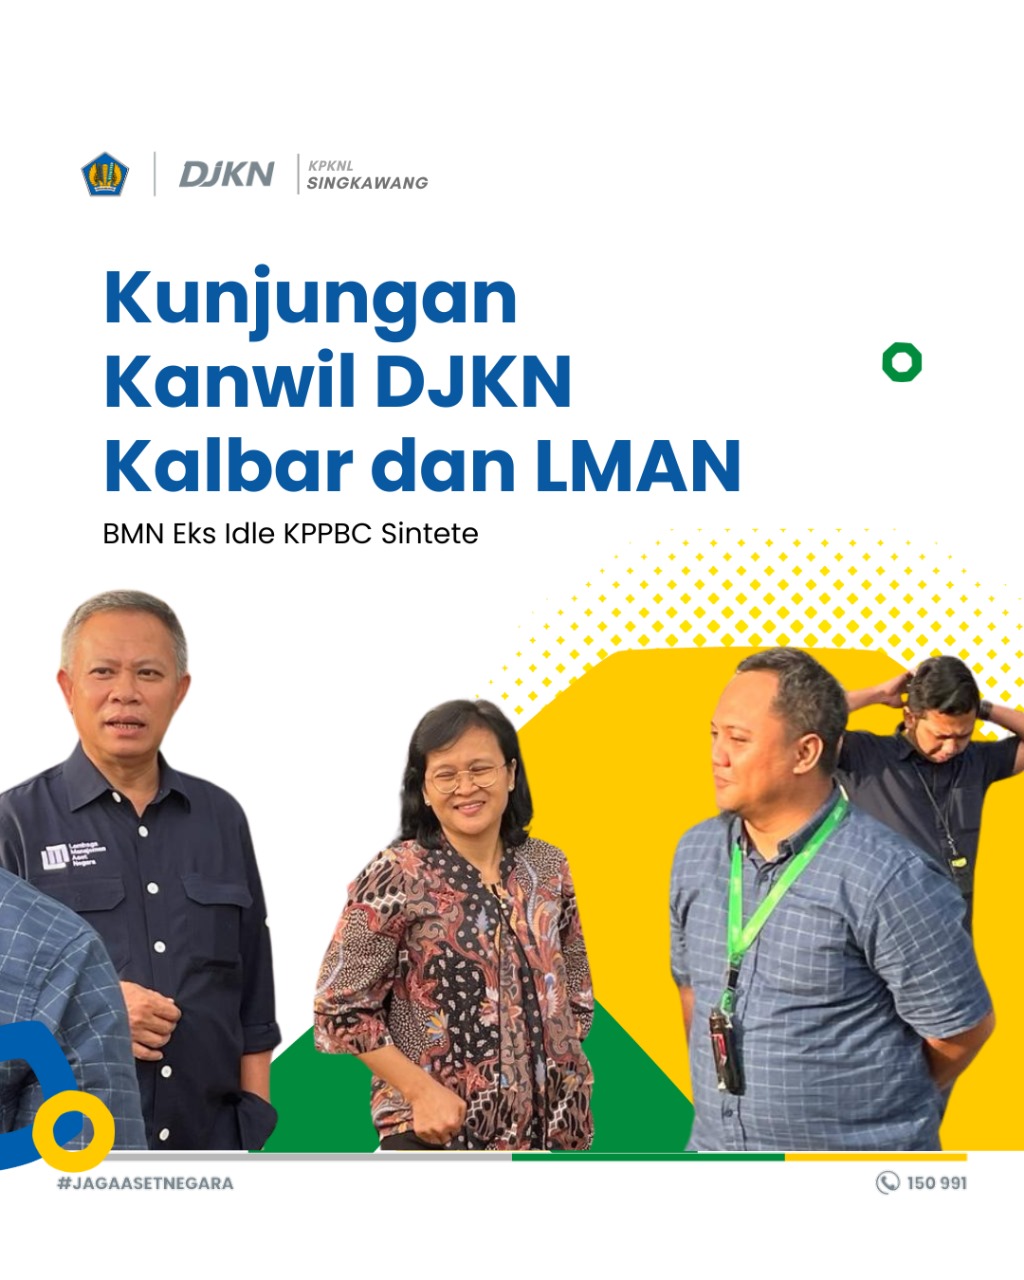 Kunjungan Kanwil DJKN Kalimantan Barat dan LMAN dalam rangka mengunjungi salah satu Asset BMN Eks Idle KPPBC Sintete 